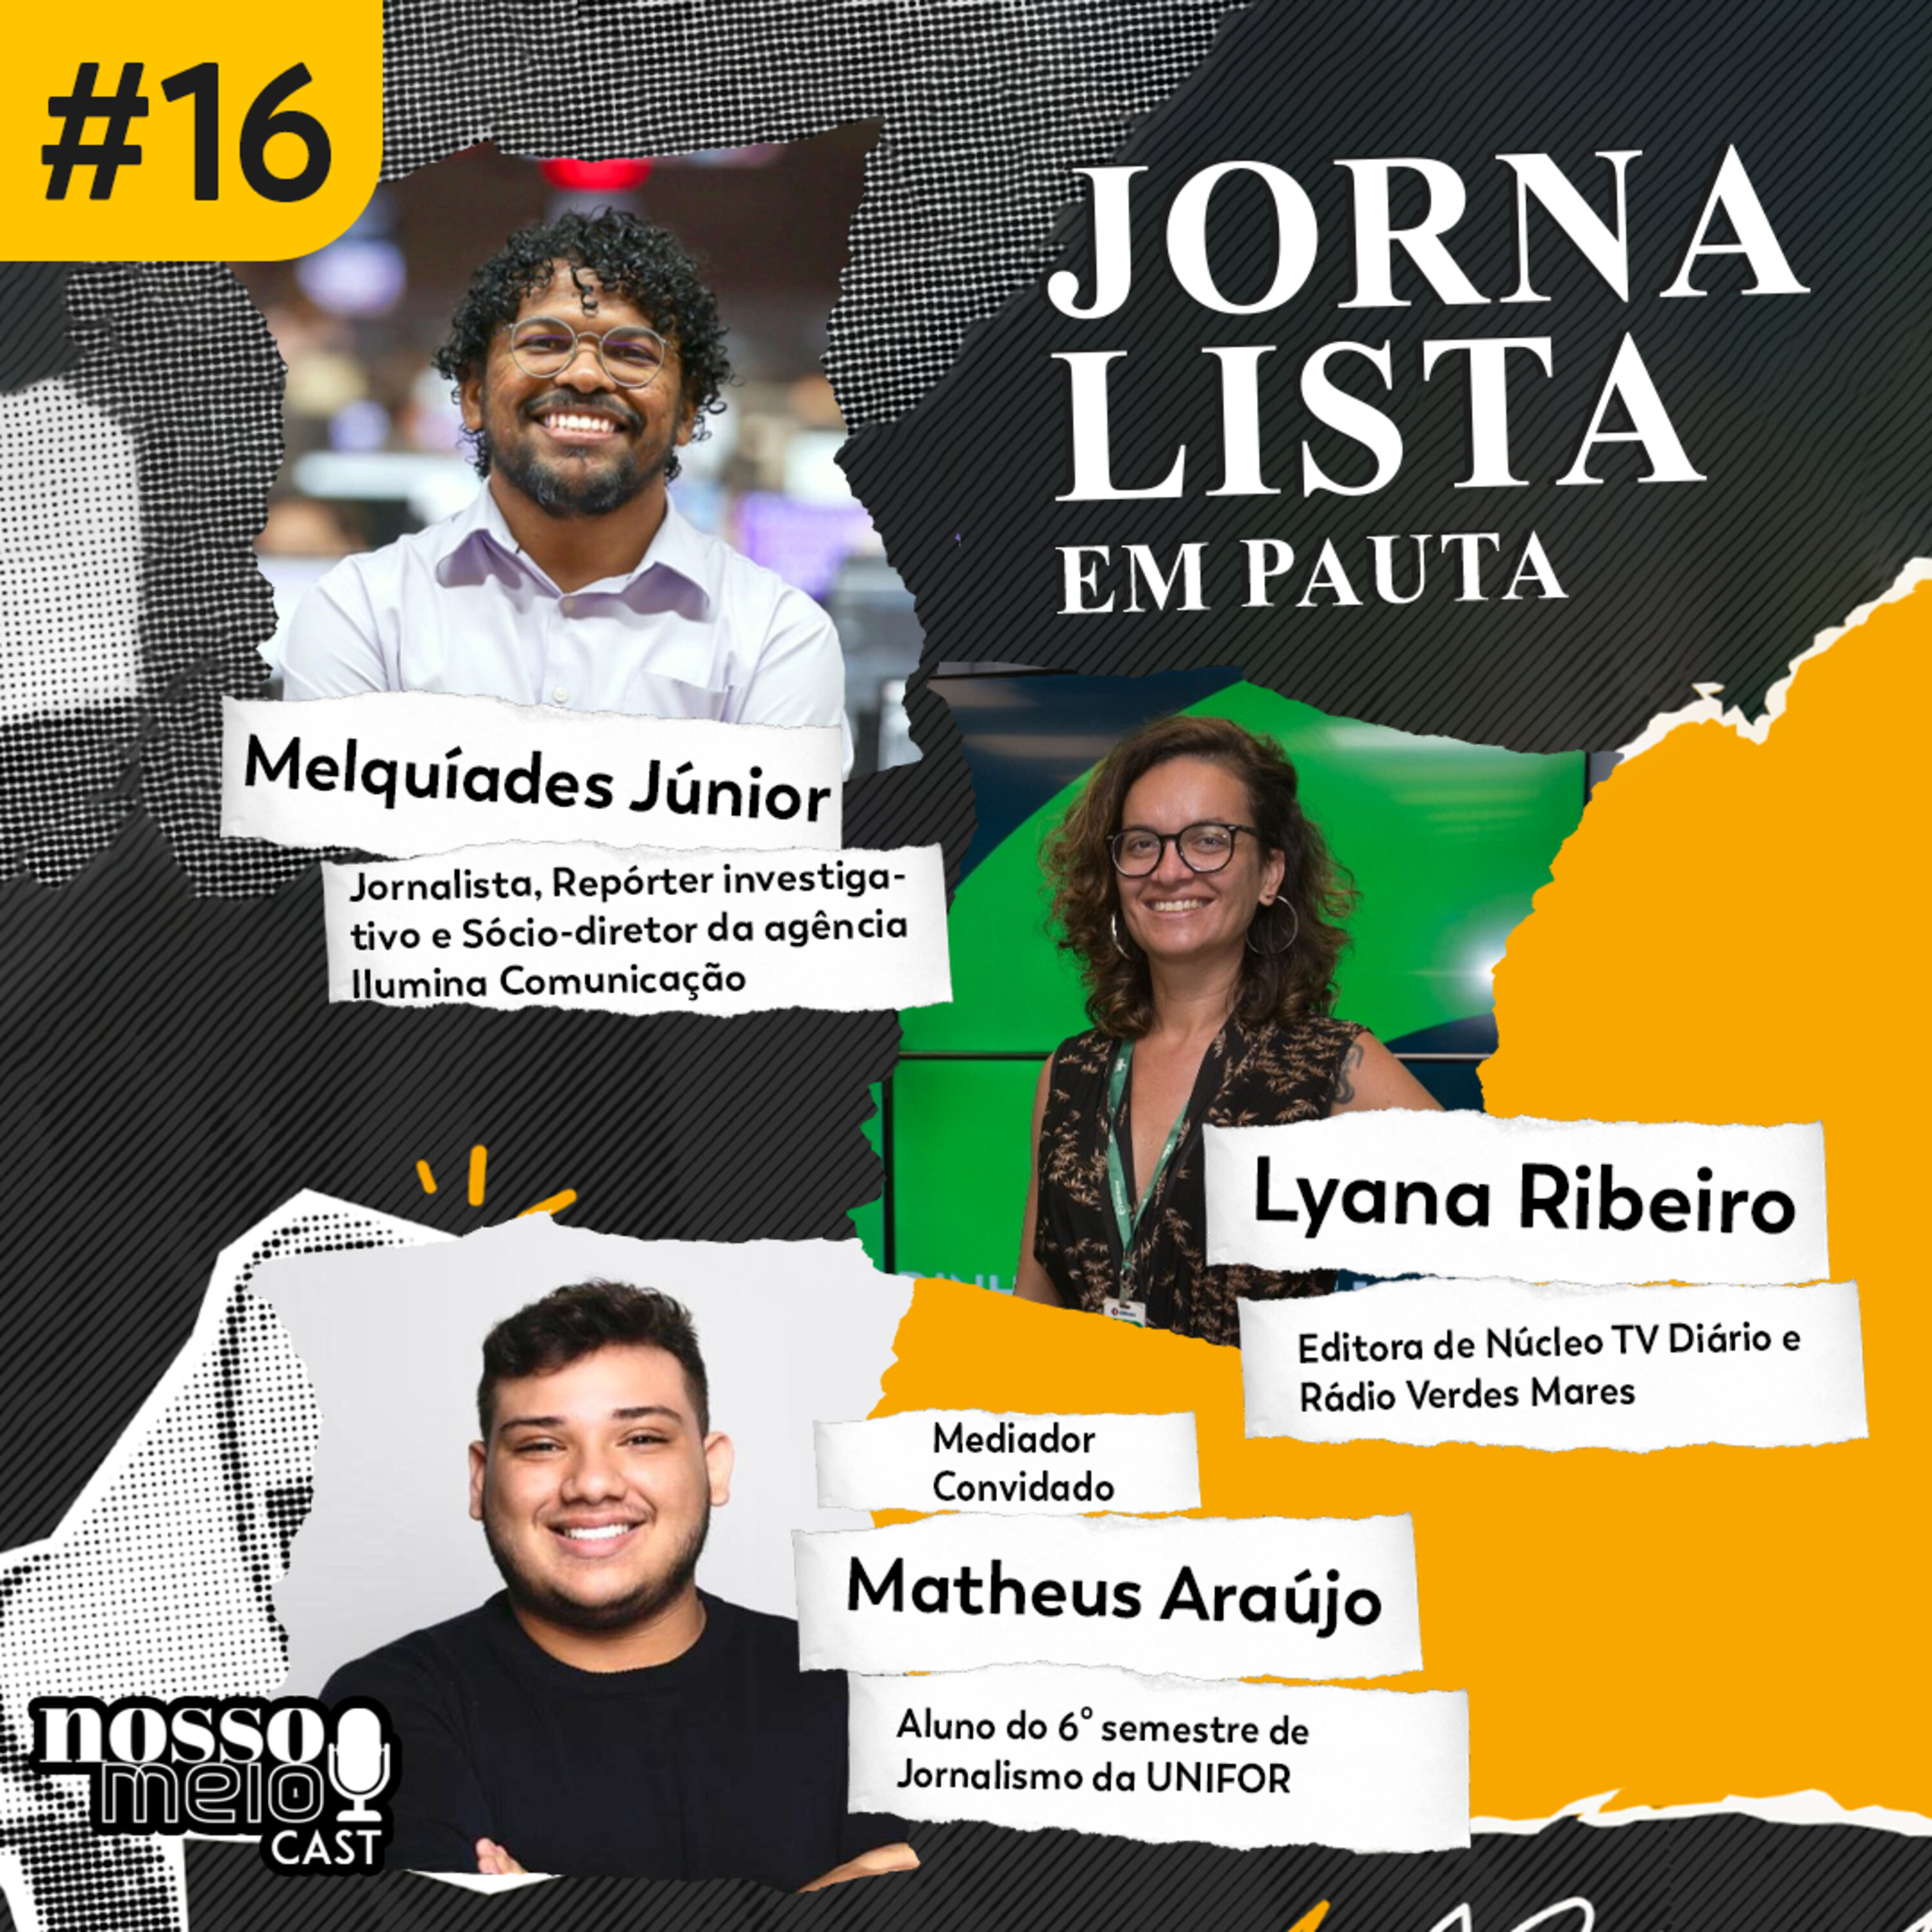 Nosso Meio Cast #16 - Jornalista em Pauta: As histórias por trás de grandes prêmios do jornalismo.